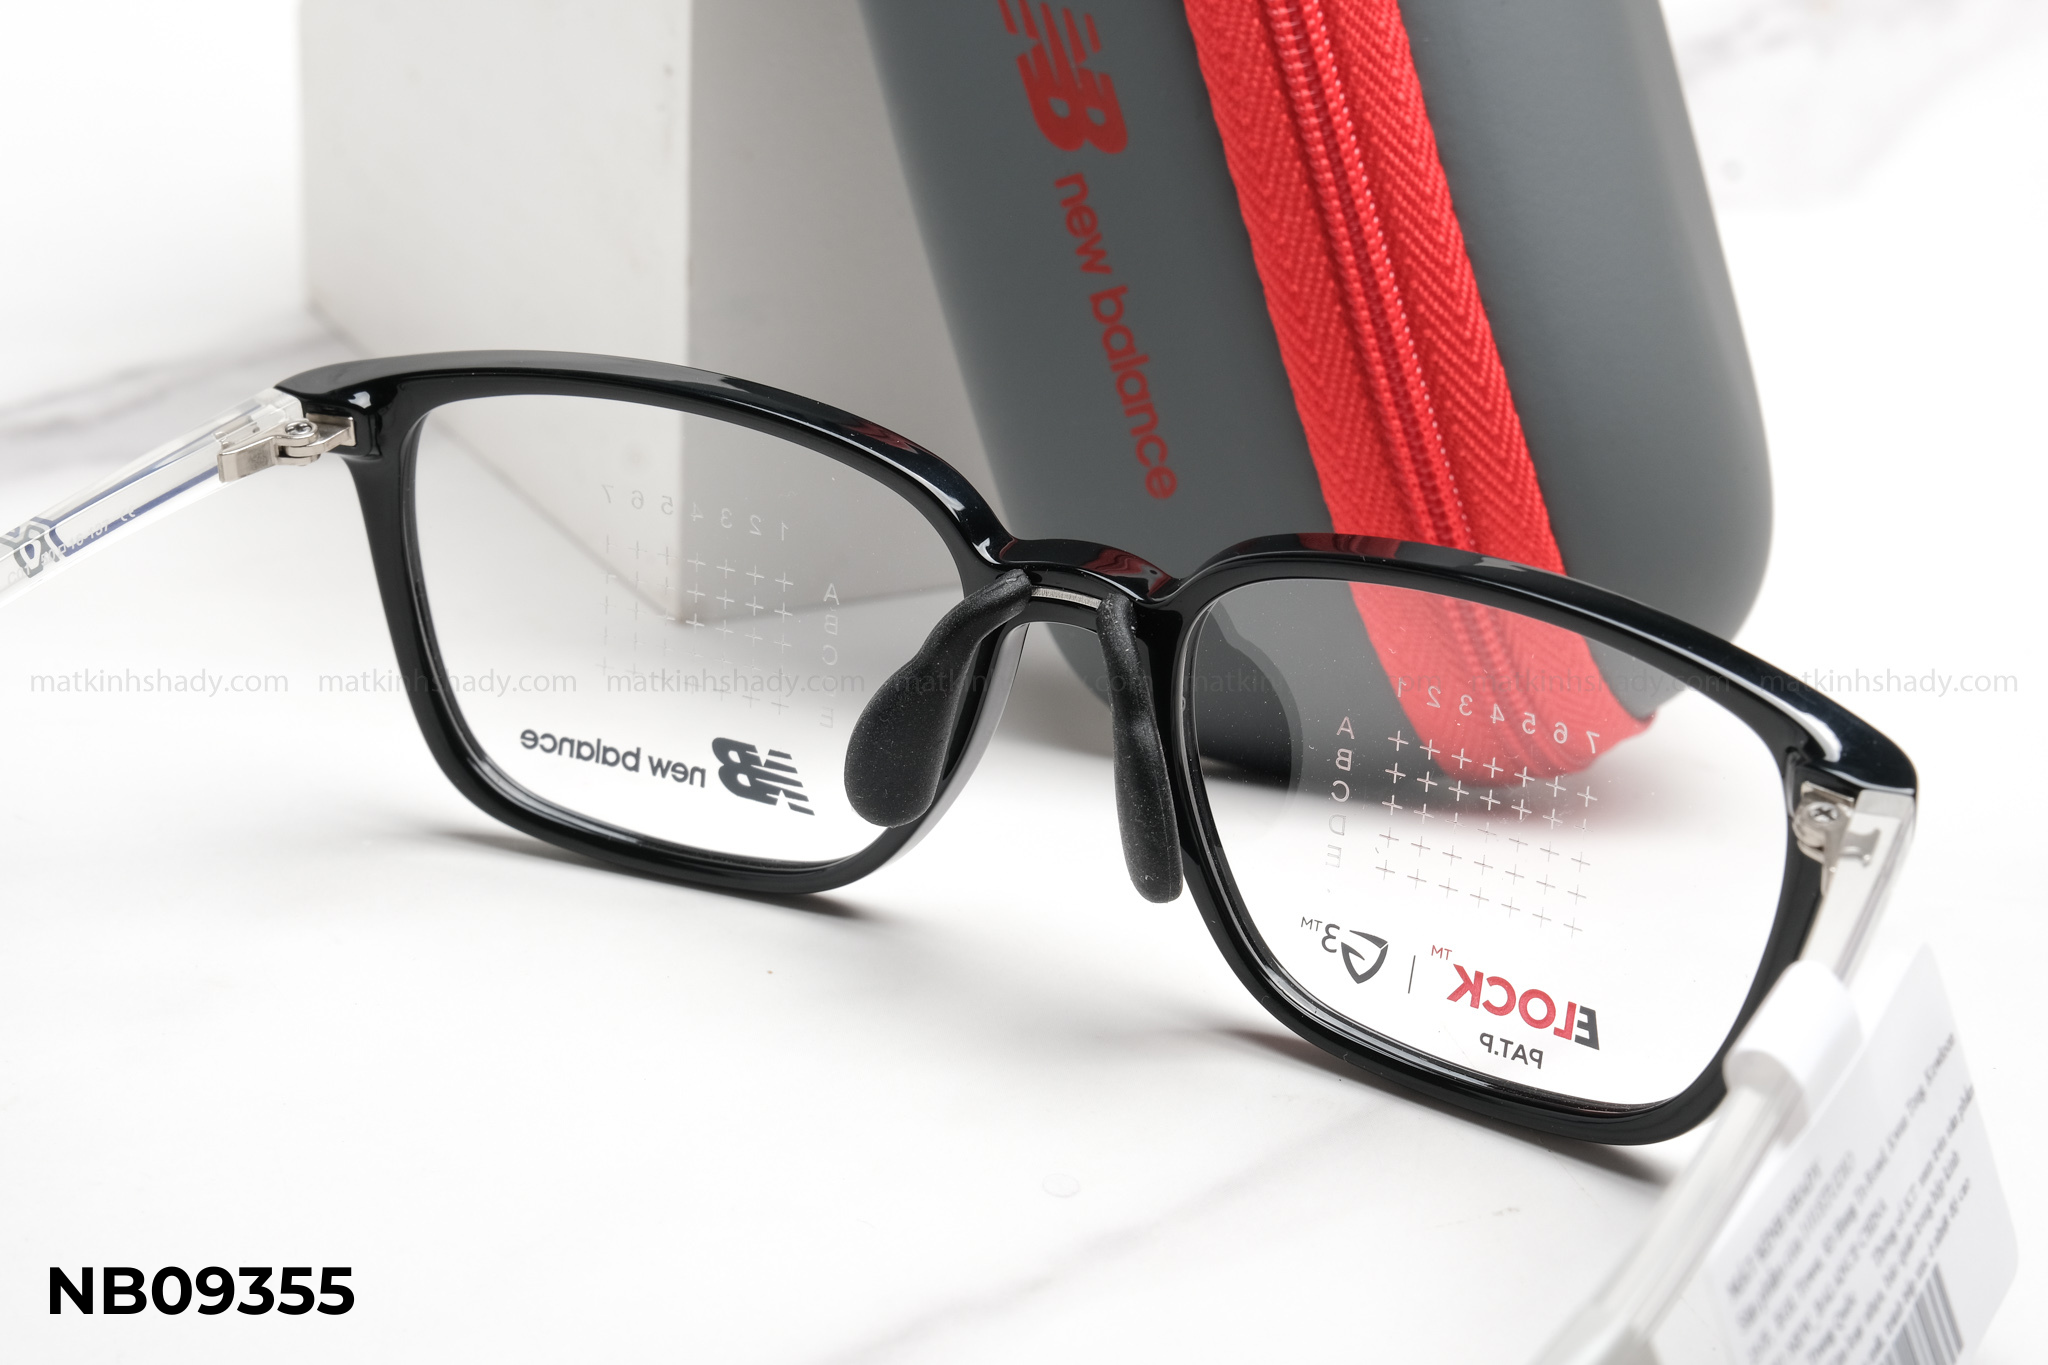  Gọng Kính Em Bé New Balance Eyewear - Glasses - NB09355 